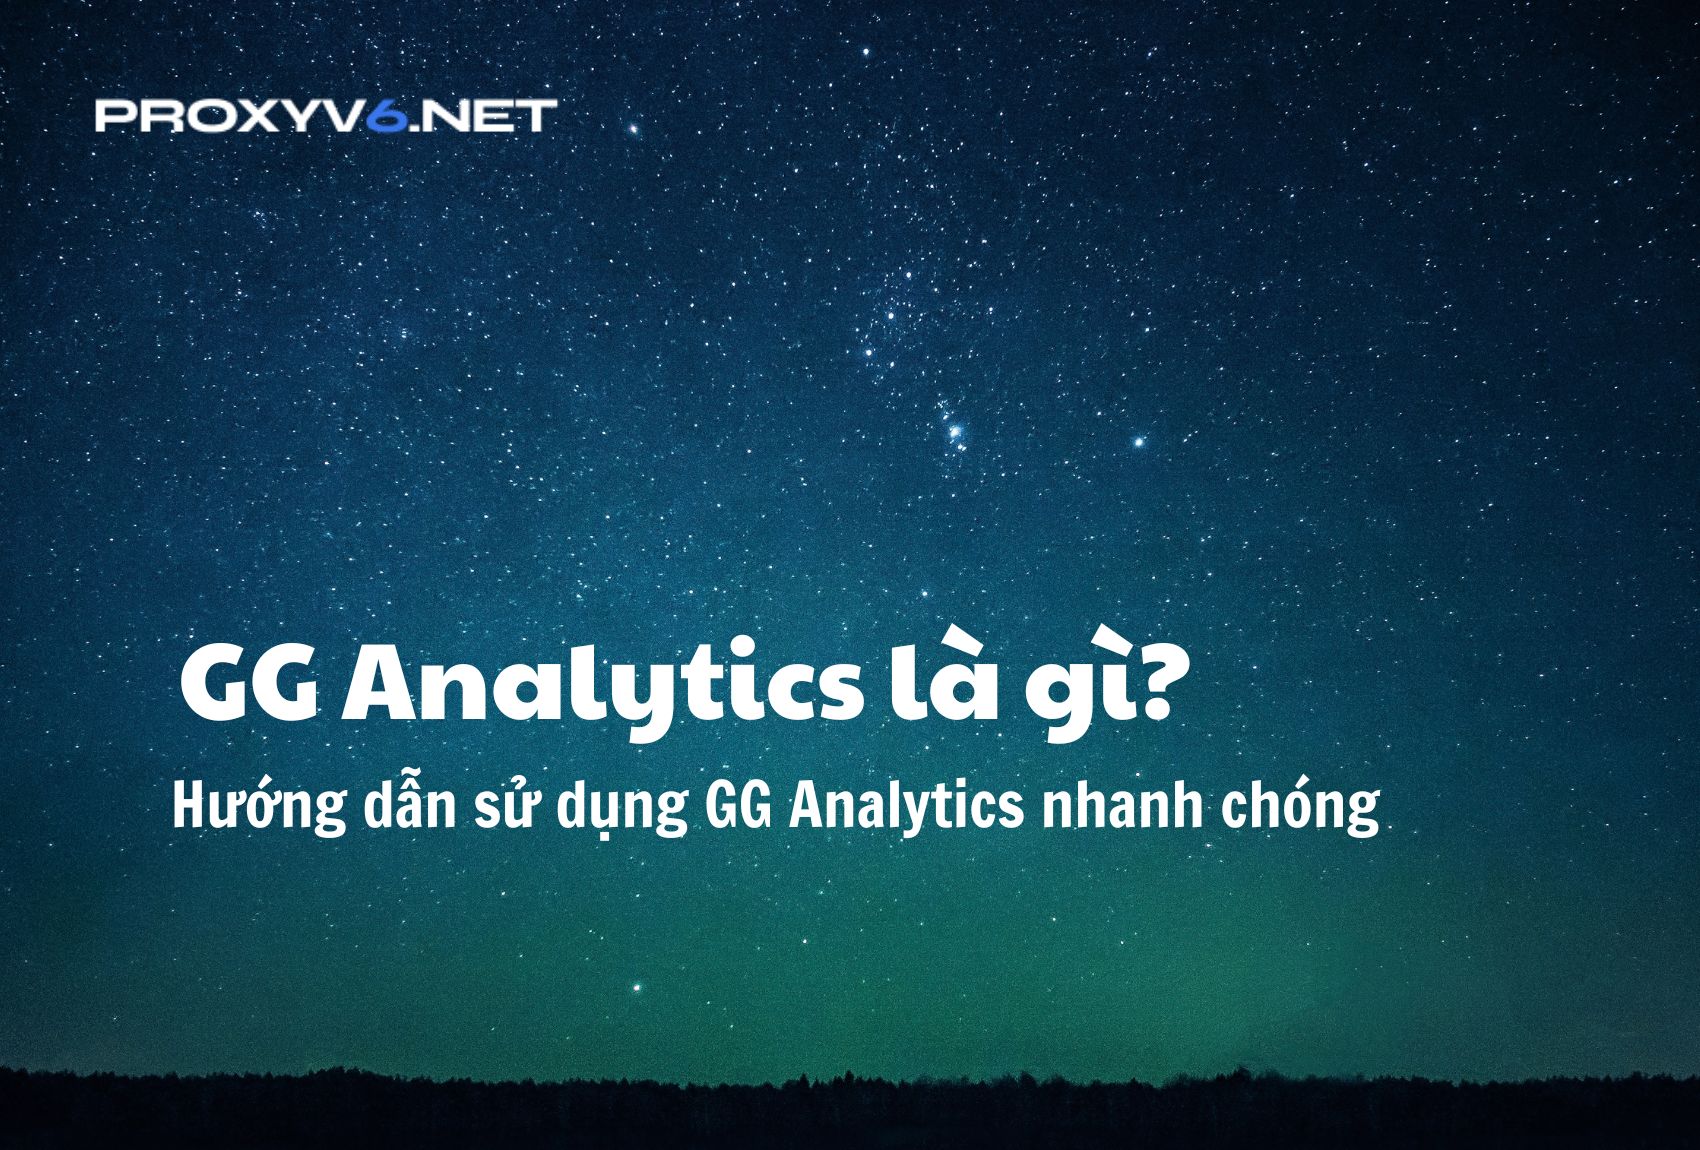 GG Analytics là gì? Hướng dẫn sử dụng GG Analytics nhanh chóng